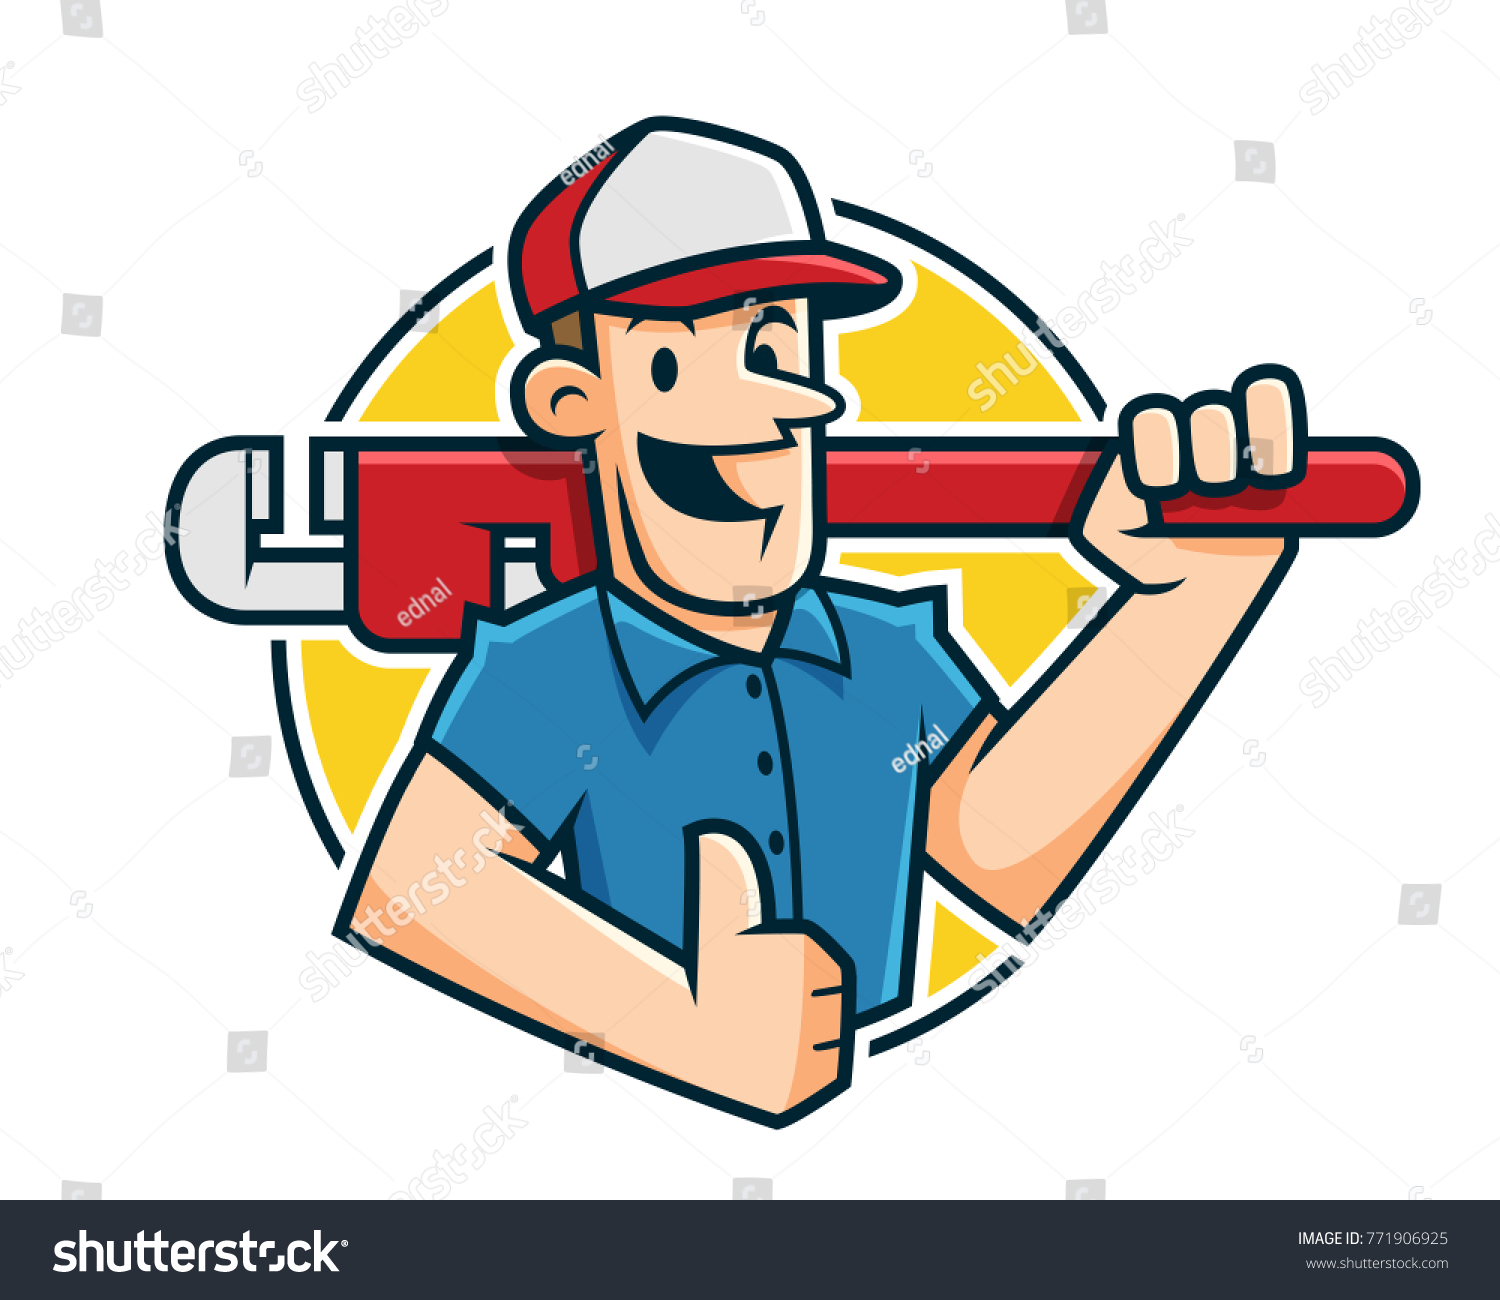 水管工吉祥物 水管工人字符 工人卡通库存矢量图 免版税